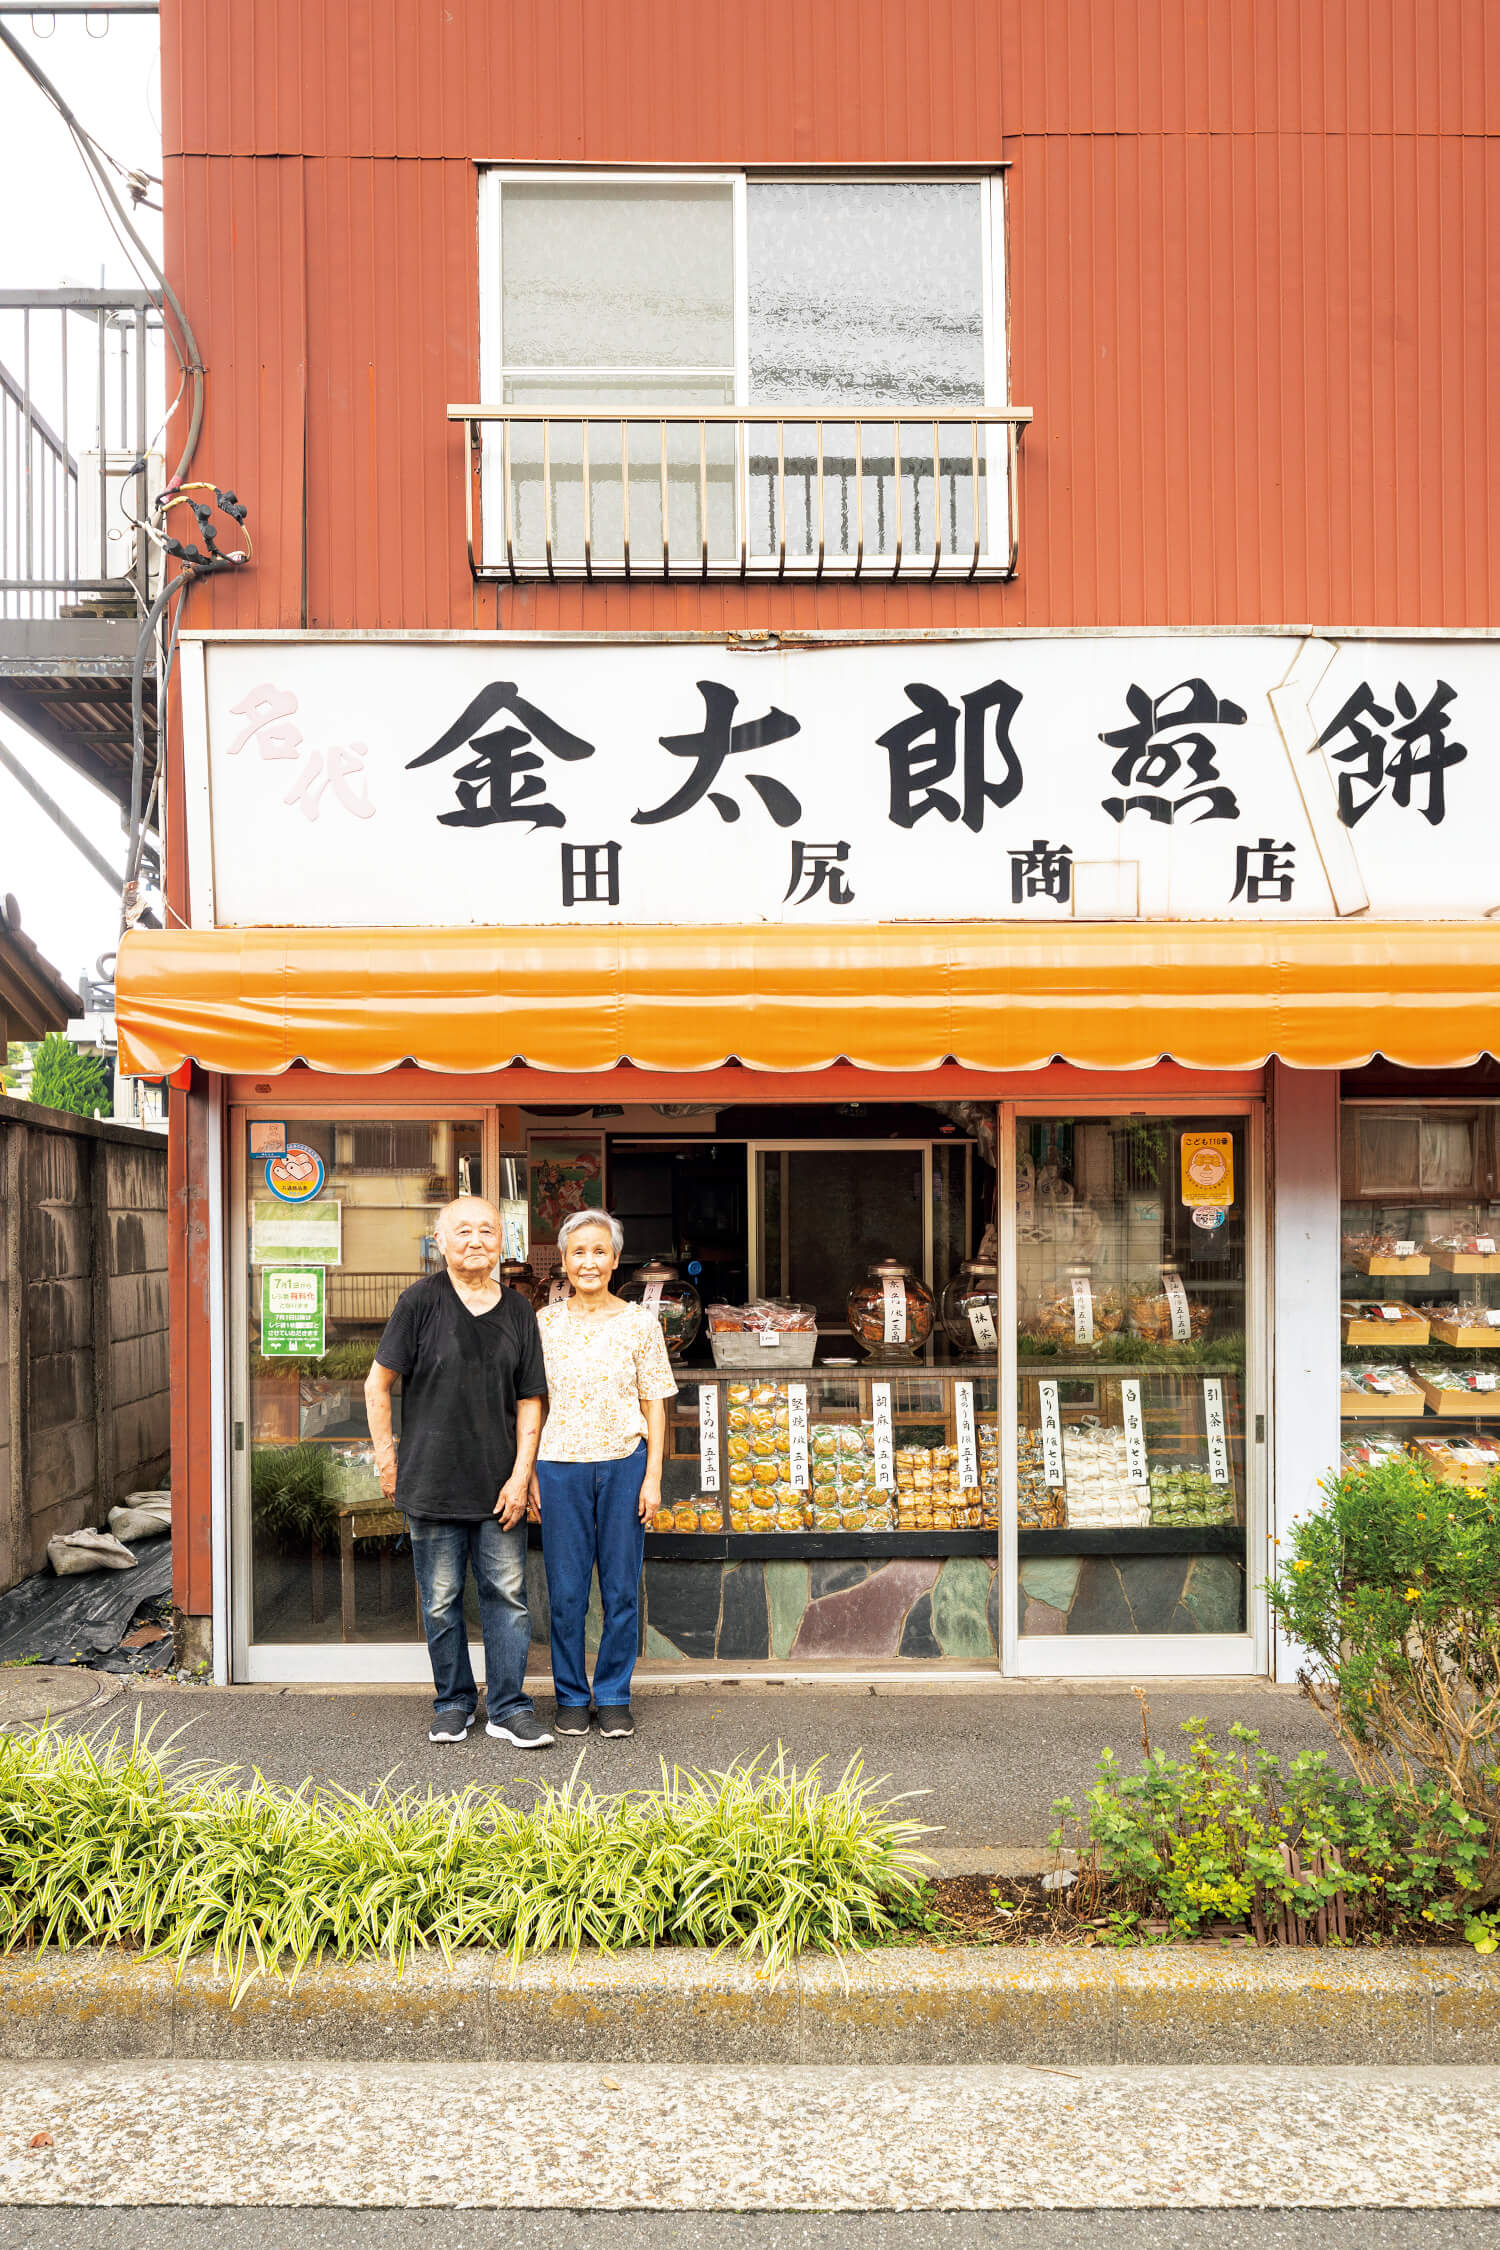 実直な看板と店構えに、和孝さん邦子さん夫婦の人柄がにじむ。